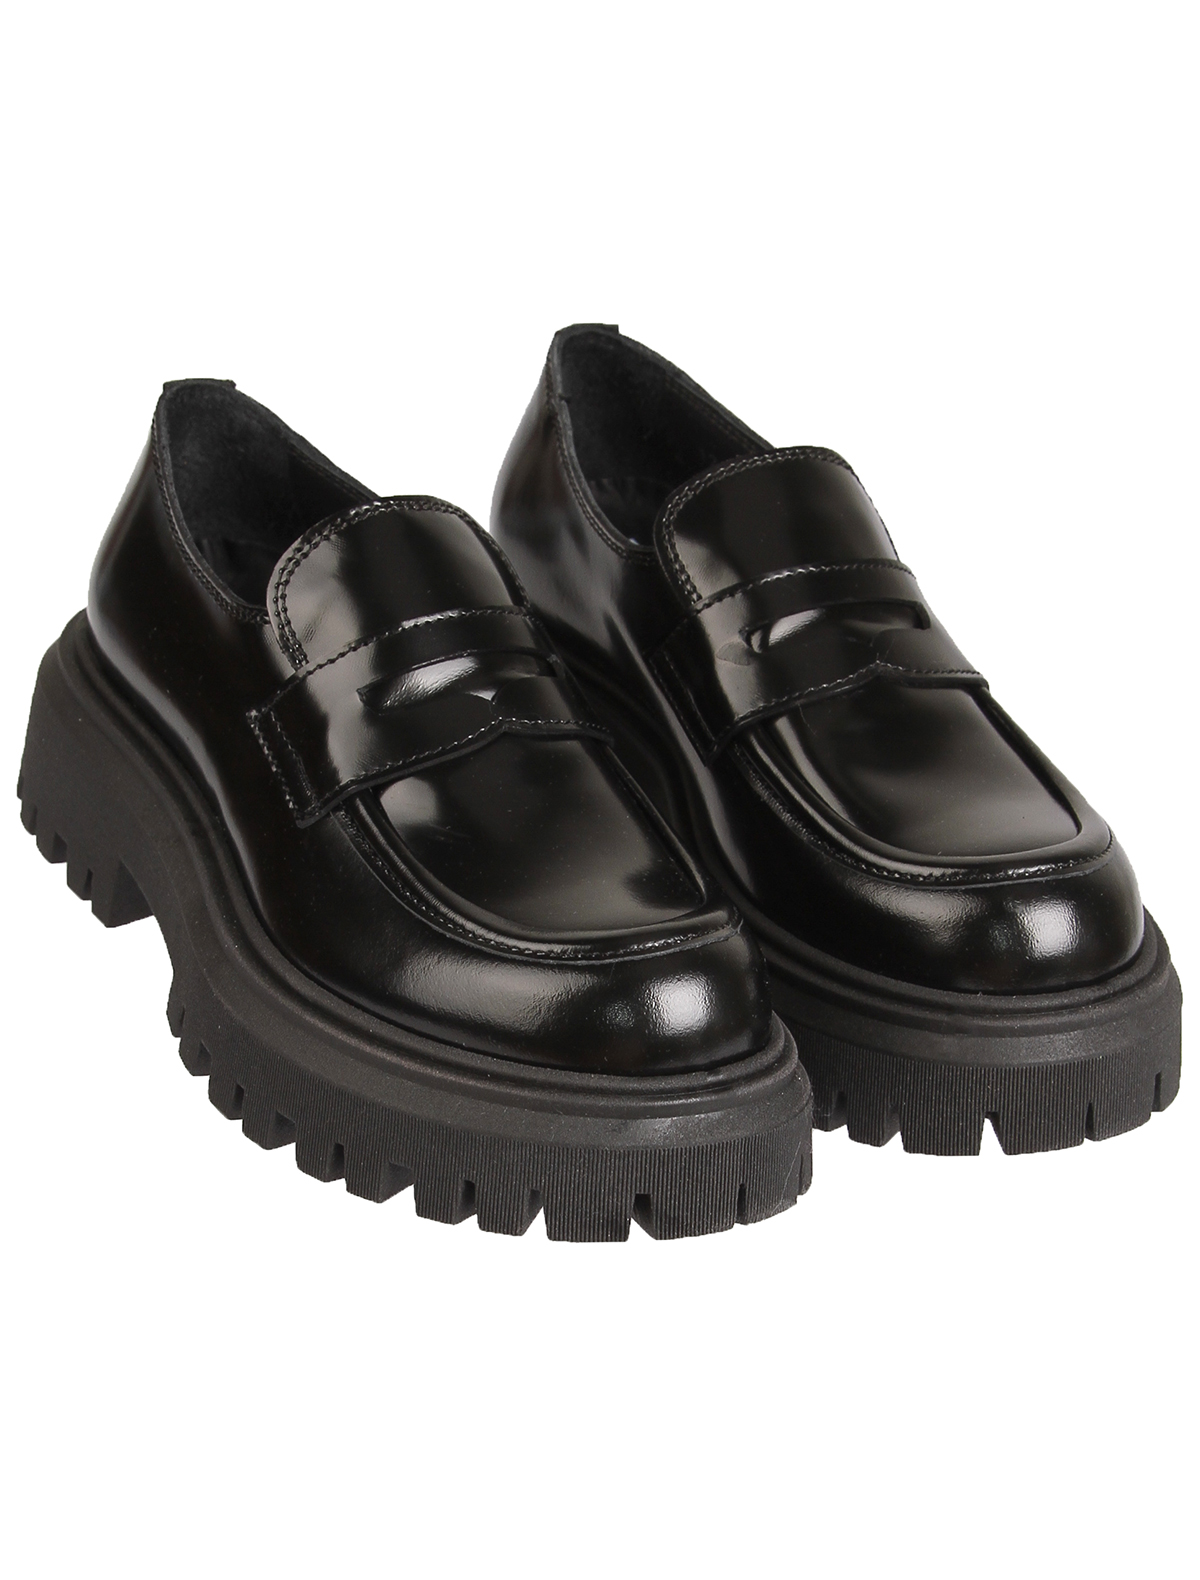 Туфли RONDINELLA 2480826, цвет черный, размер 31